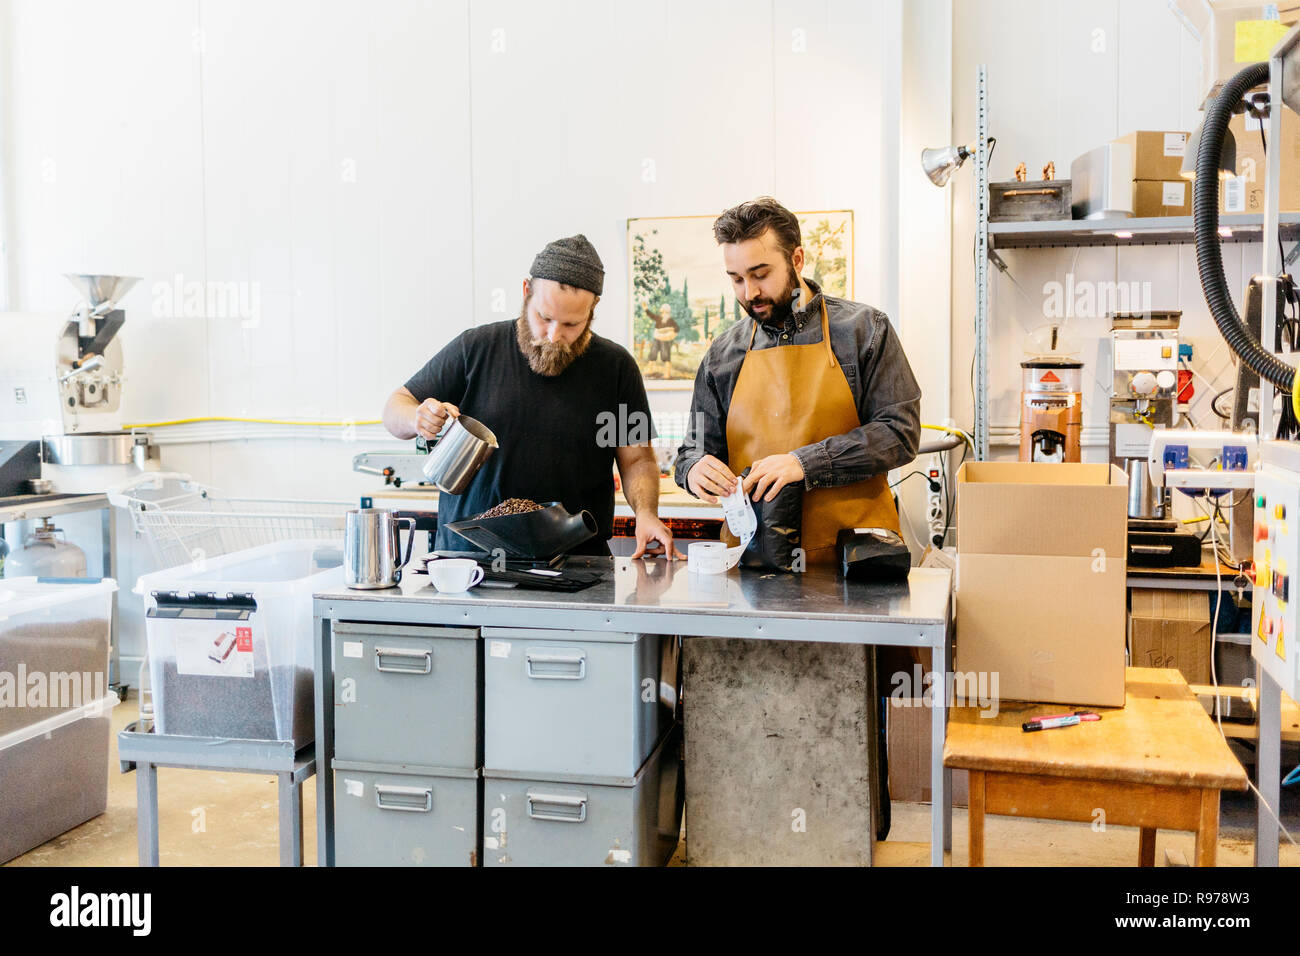 Dos hombres hacer café en una cocina comercial en Suecia Foto de stock